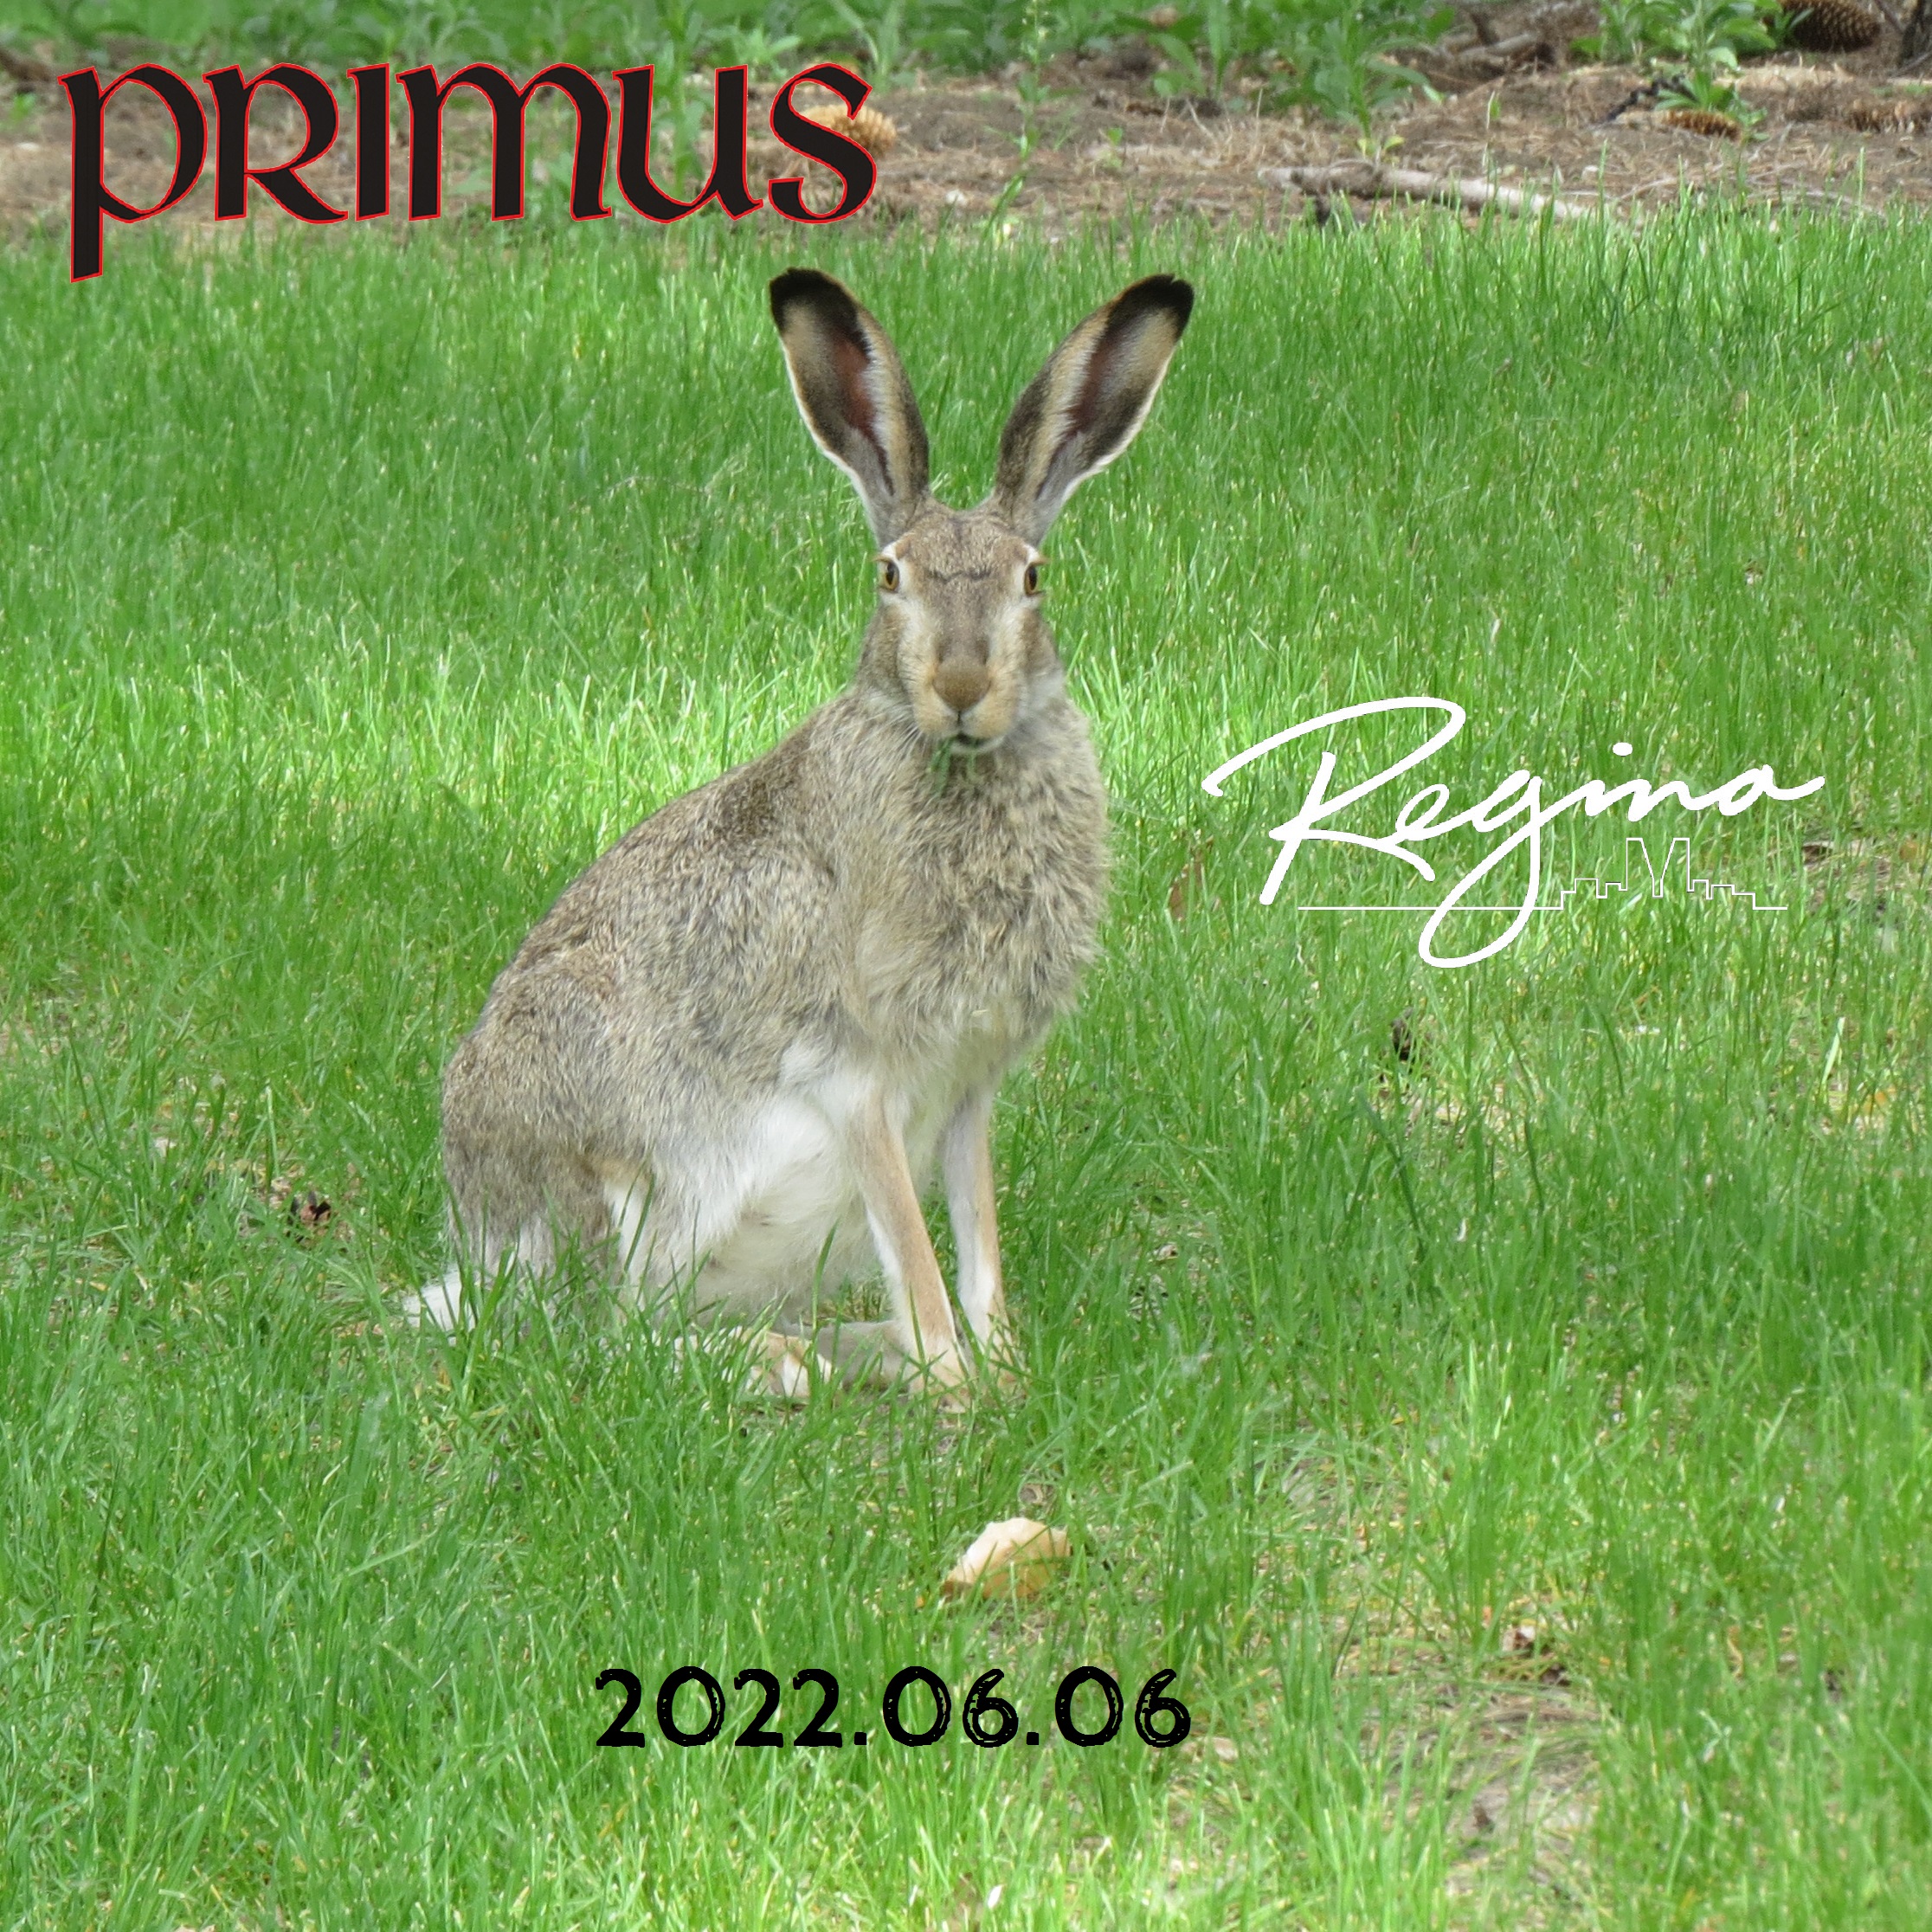 Primus2022-06-06TheArtsCentreReginaCanada (3).jpg